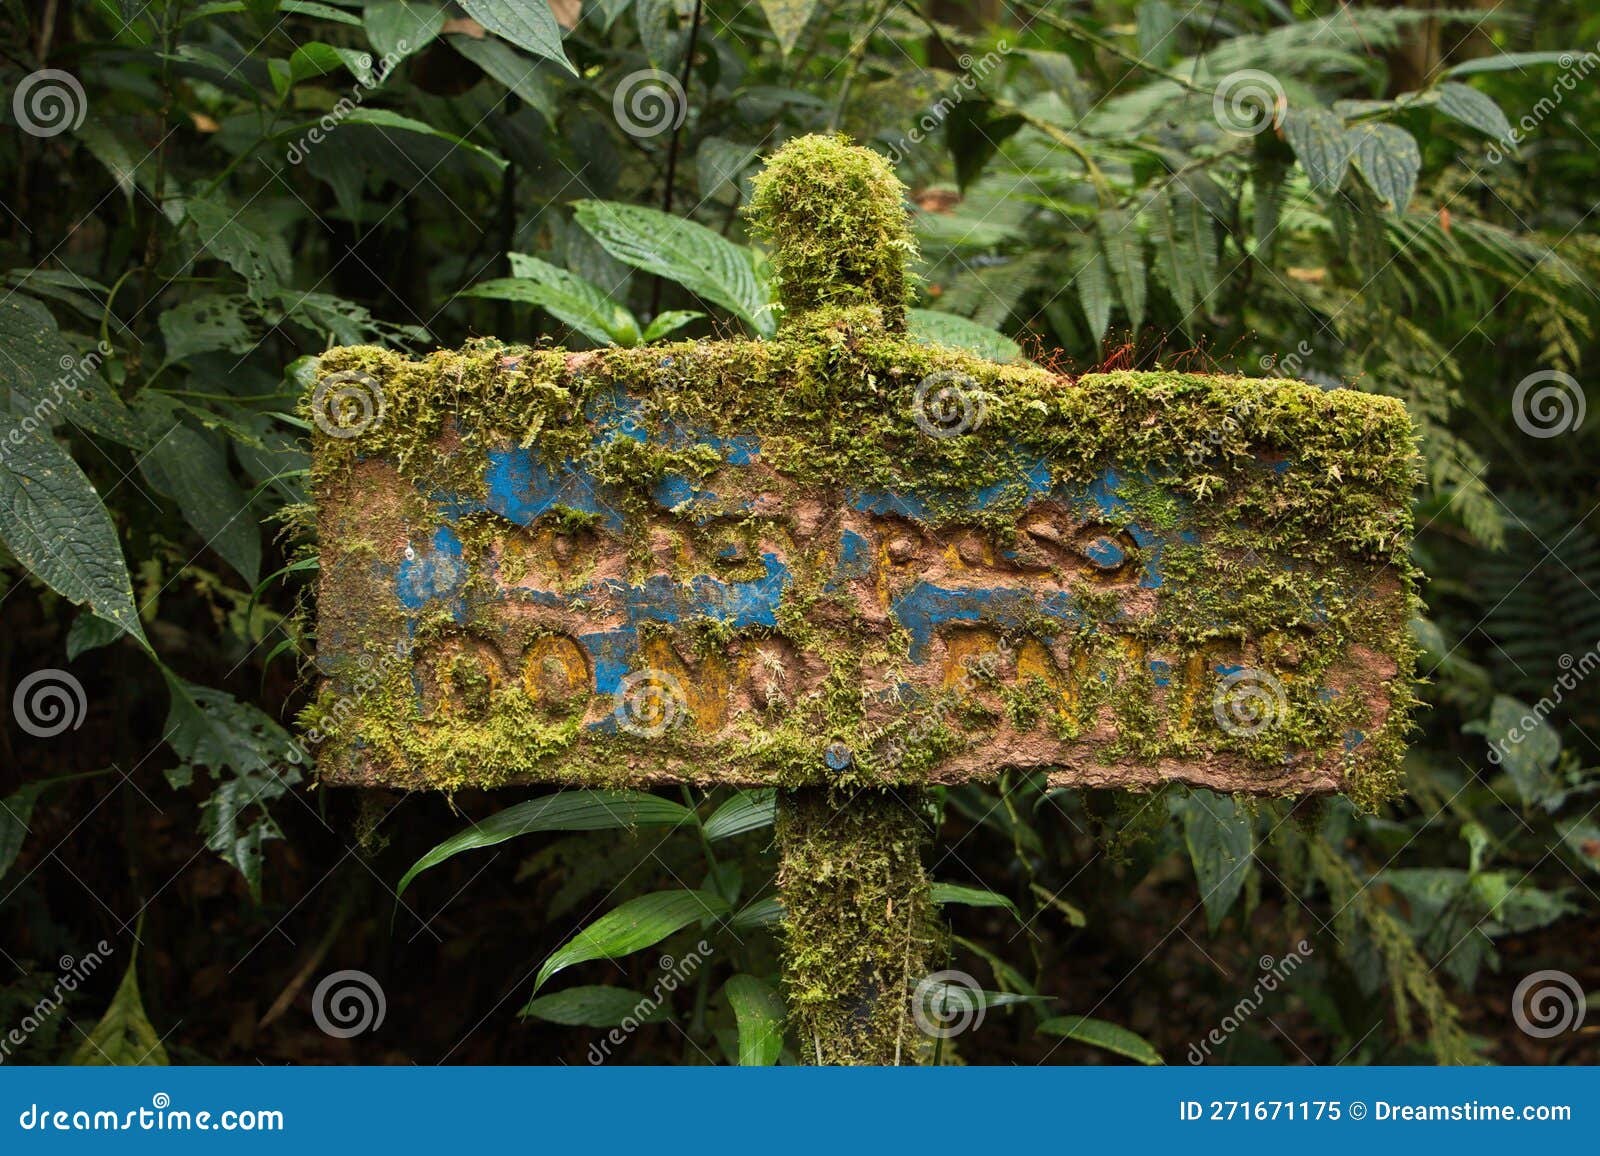 information board in bosque nuboso national park near santa elena in costa rica